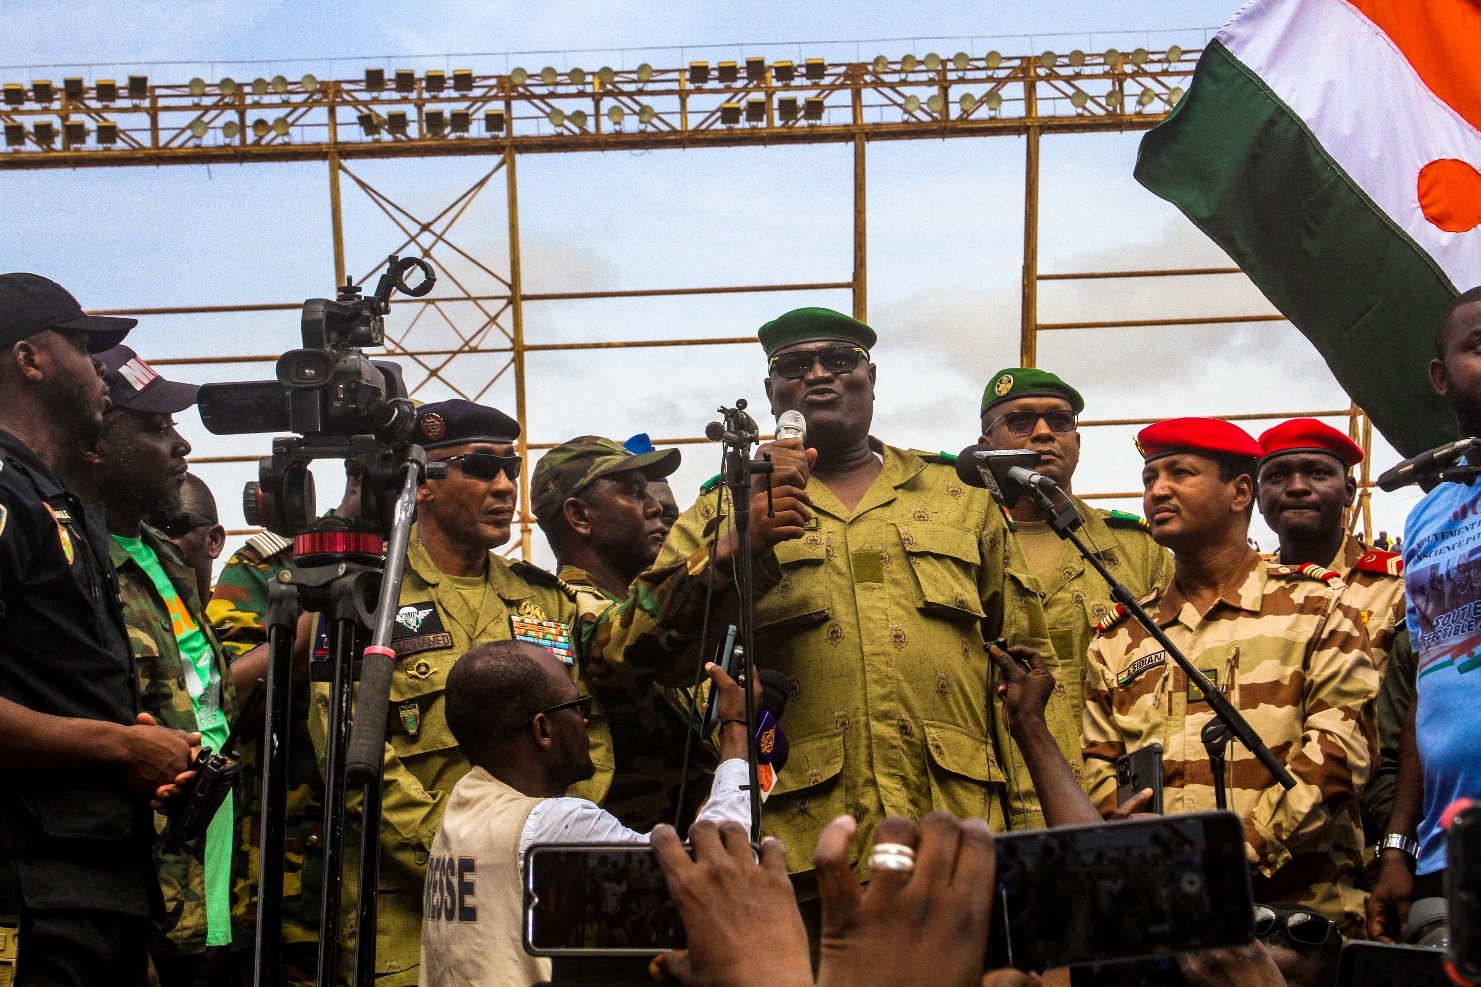 "It's different": West prepares Niger intervention